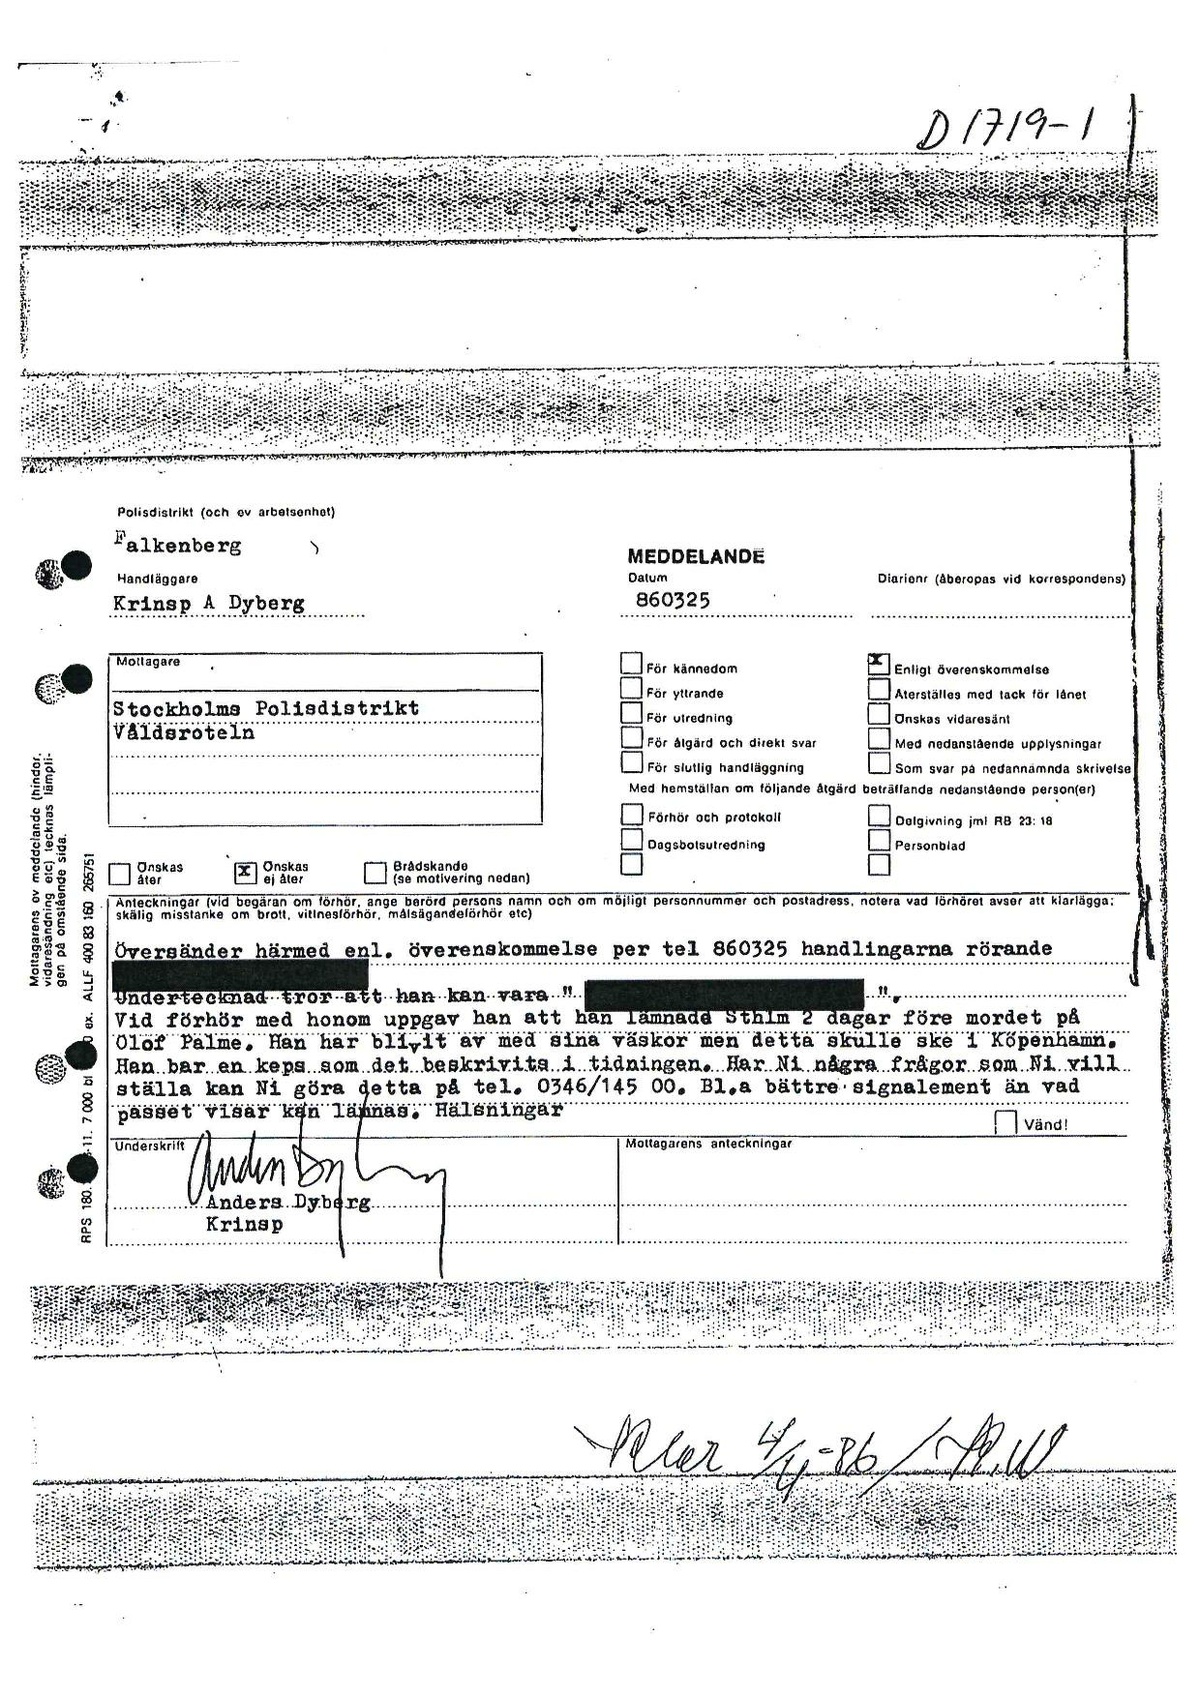 Pol-1986-03-08 D1719-01 Man försvunnen från hotelldel 1.pdf